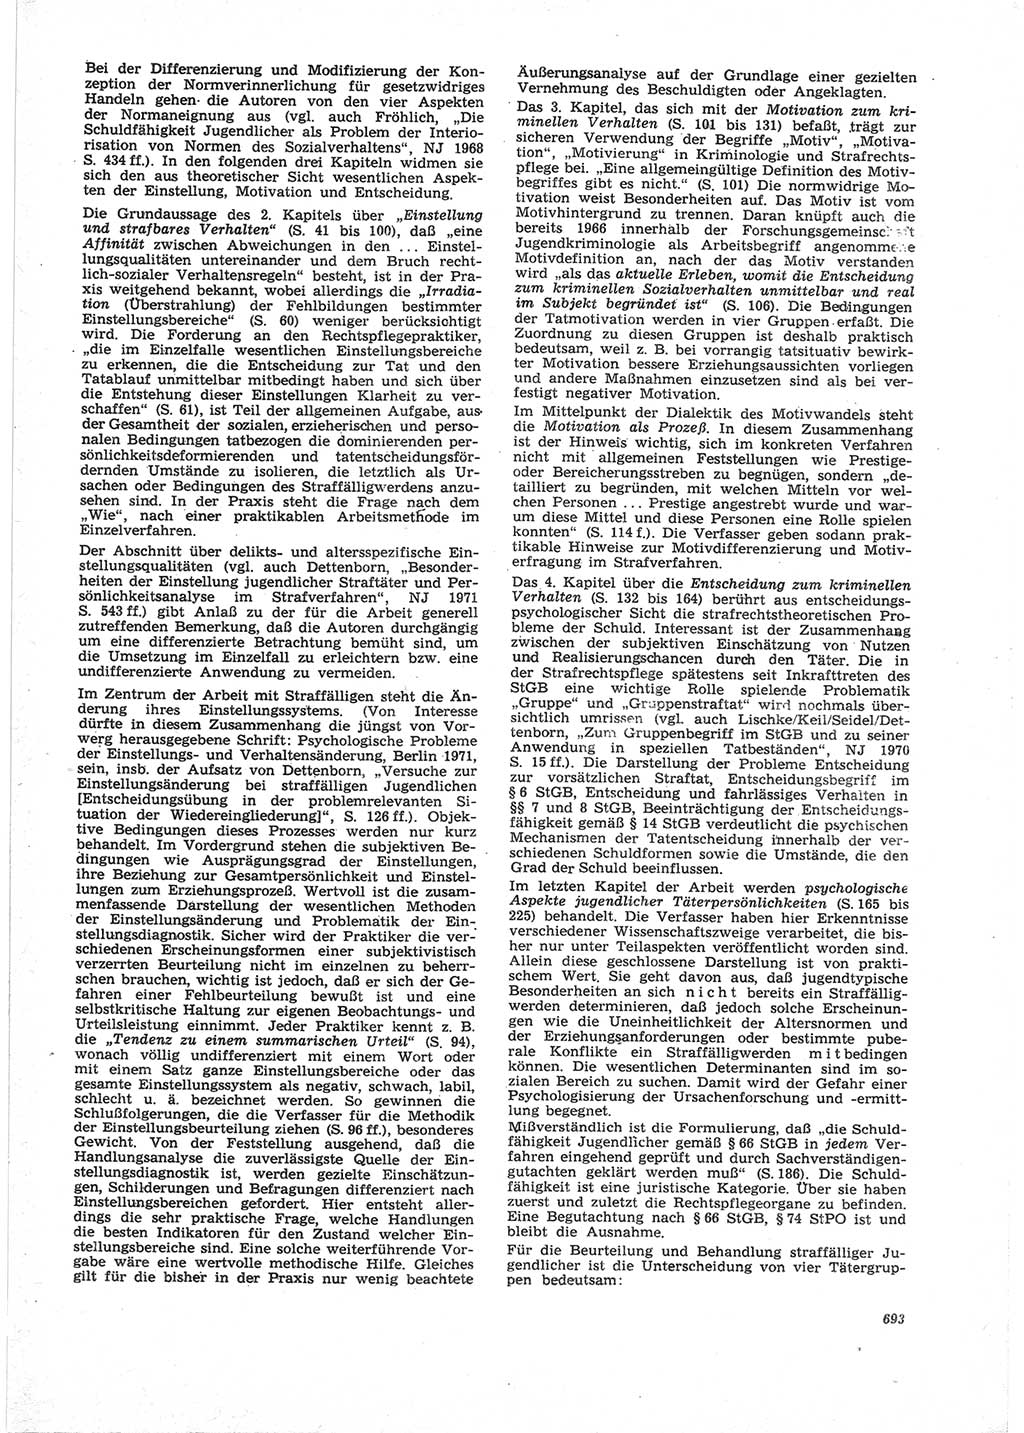 Neue Justiz (NJ), Zeitschrift für Recht und Rechtswissenschaft [Deutsche Demokratische Republik (DDR)], 25. Jahrgang 1971, Seite 693 (NJ DDR 1971, S. 693)